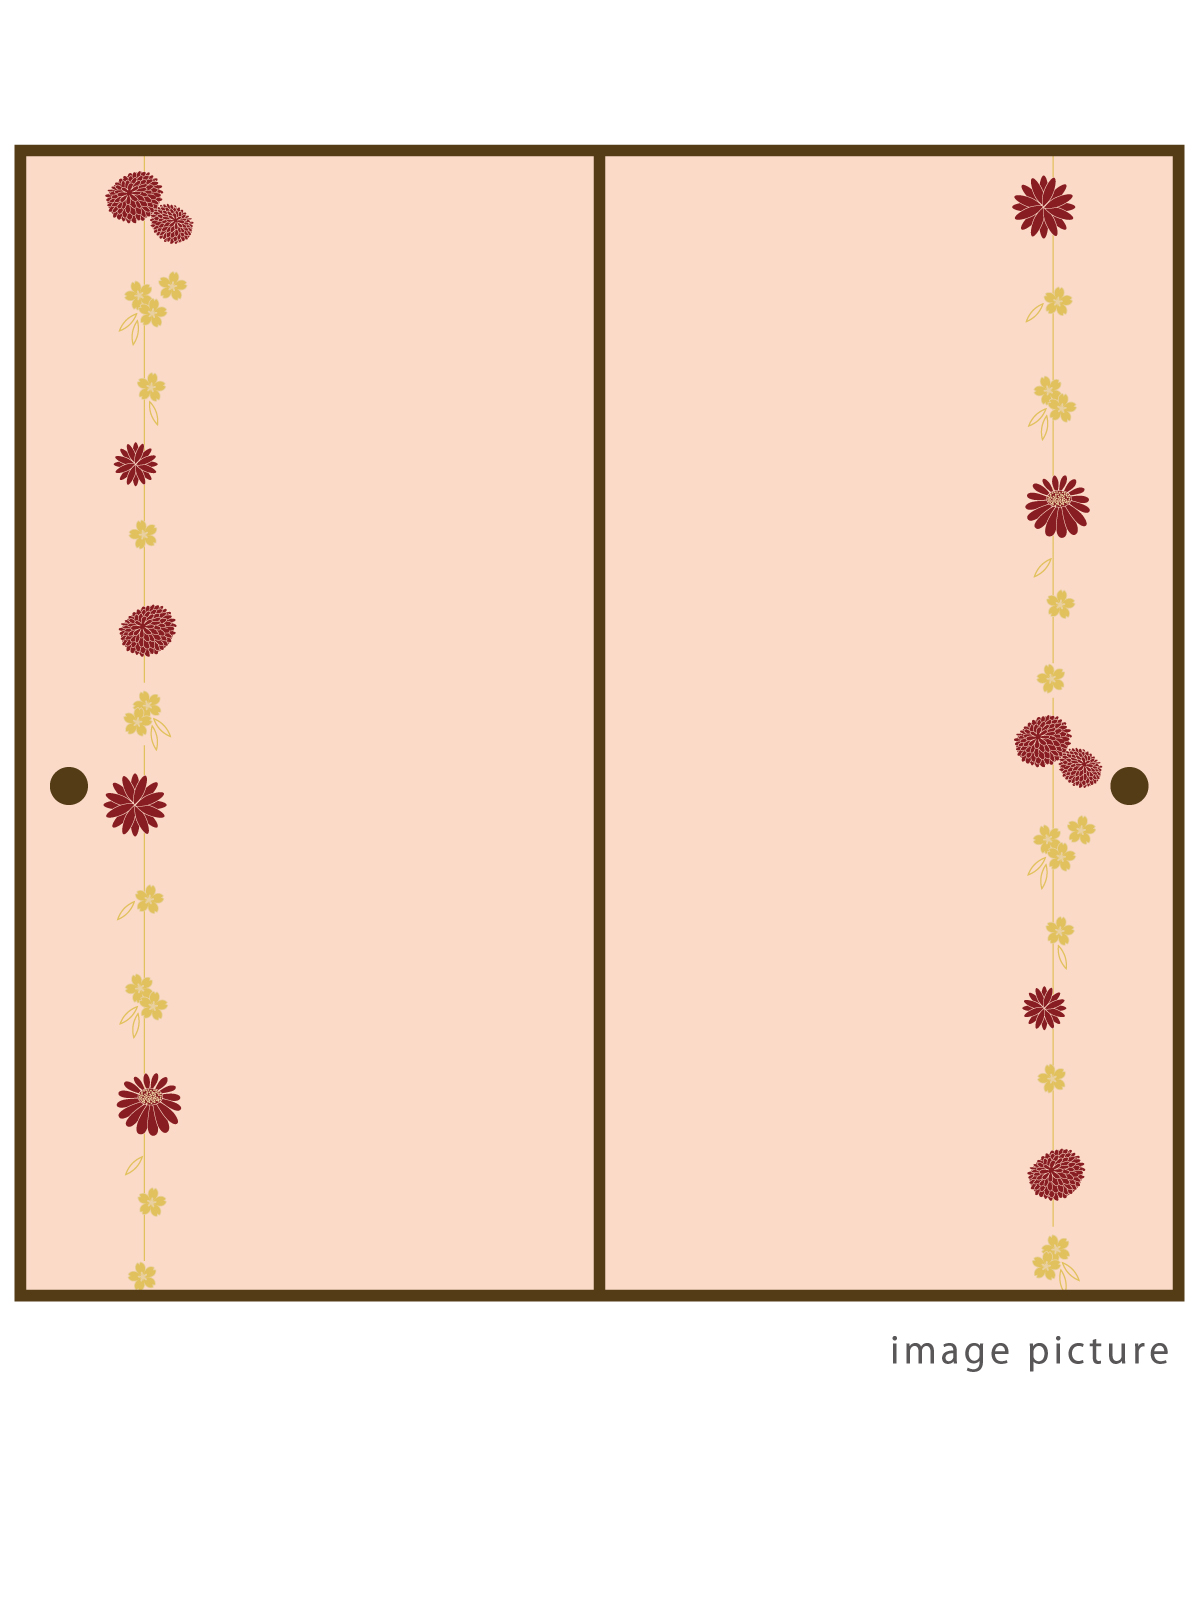 菊桜繋ぎ柄の襖紙